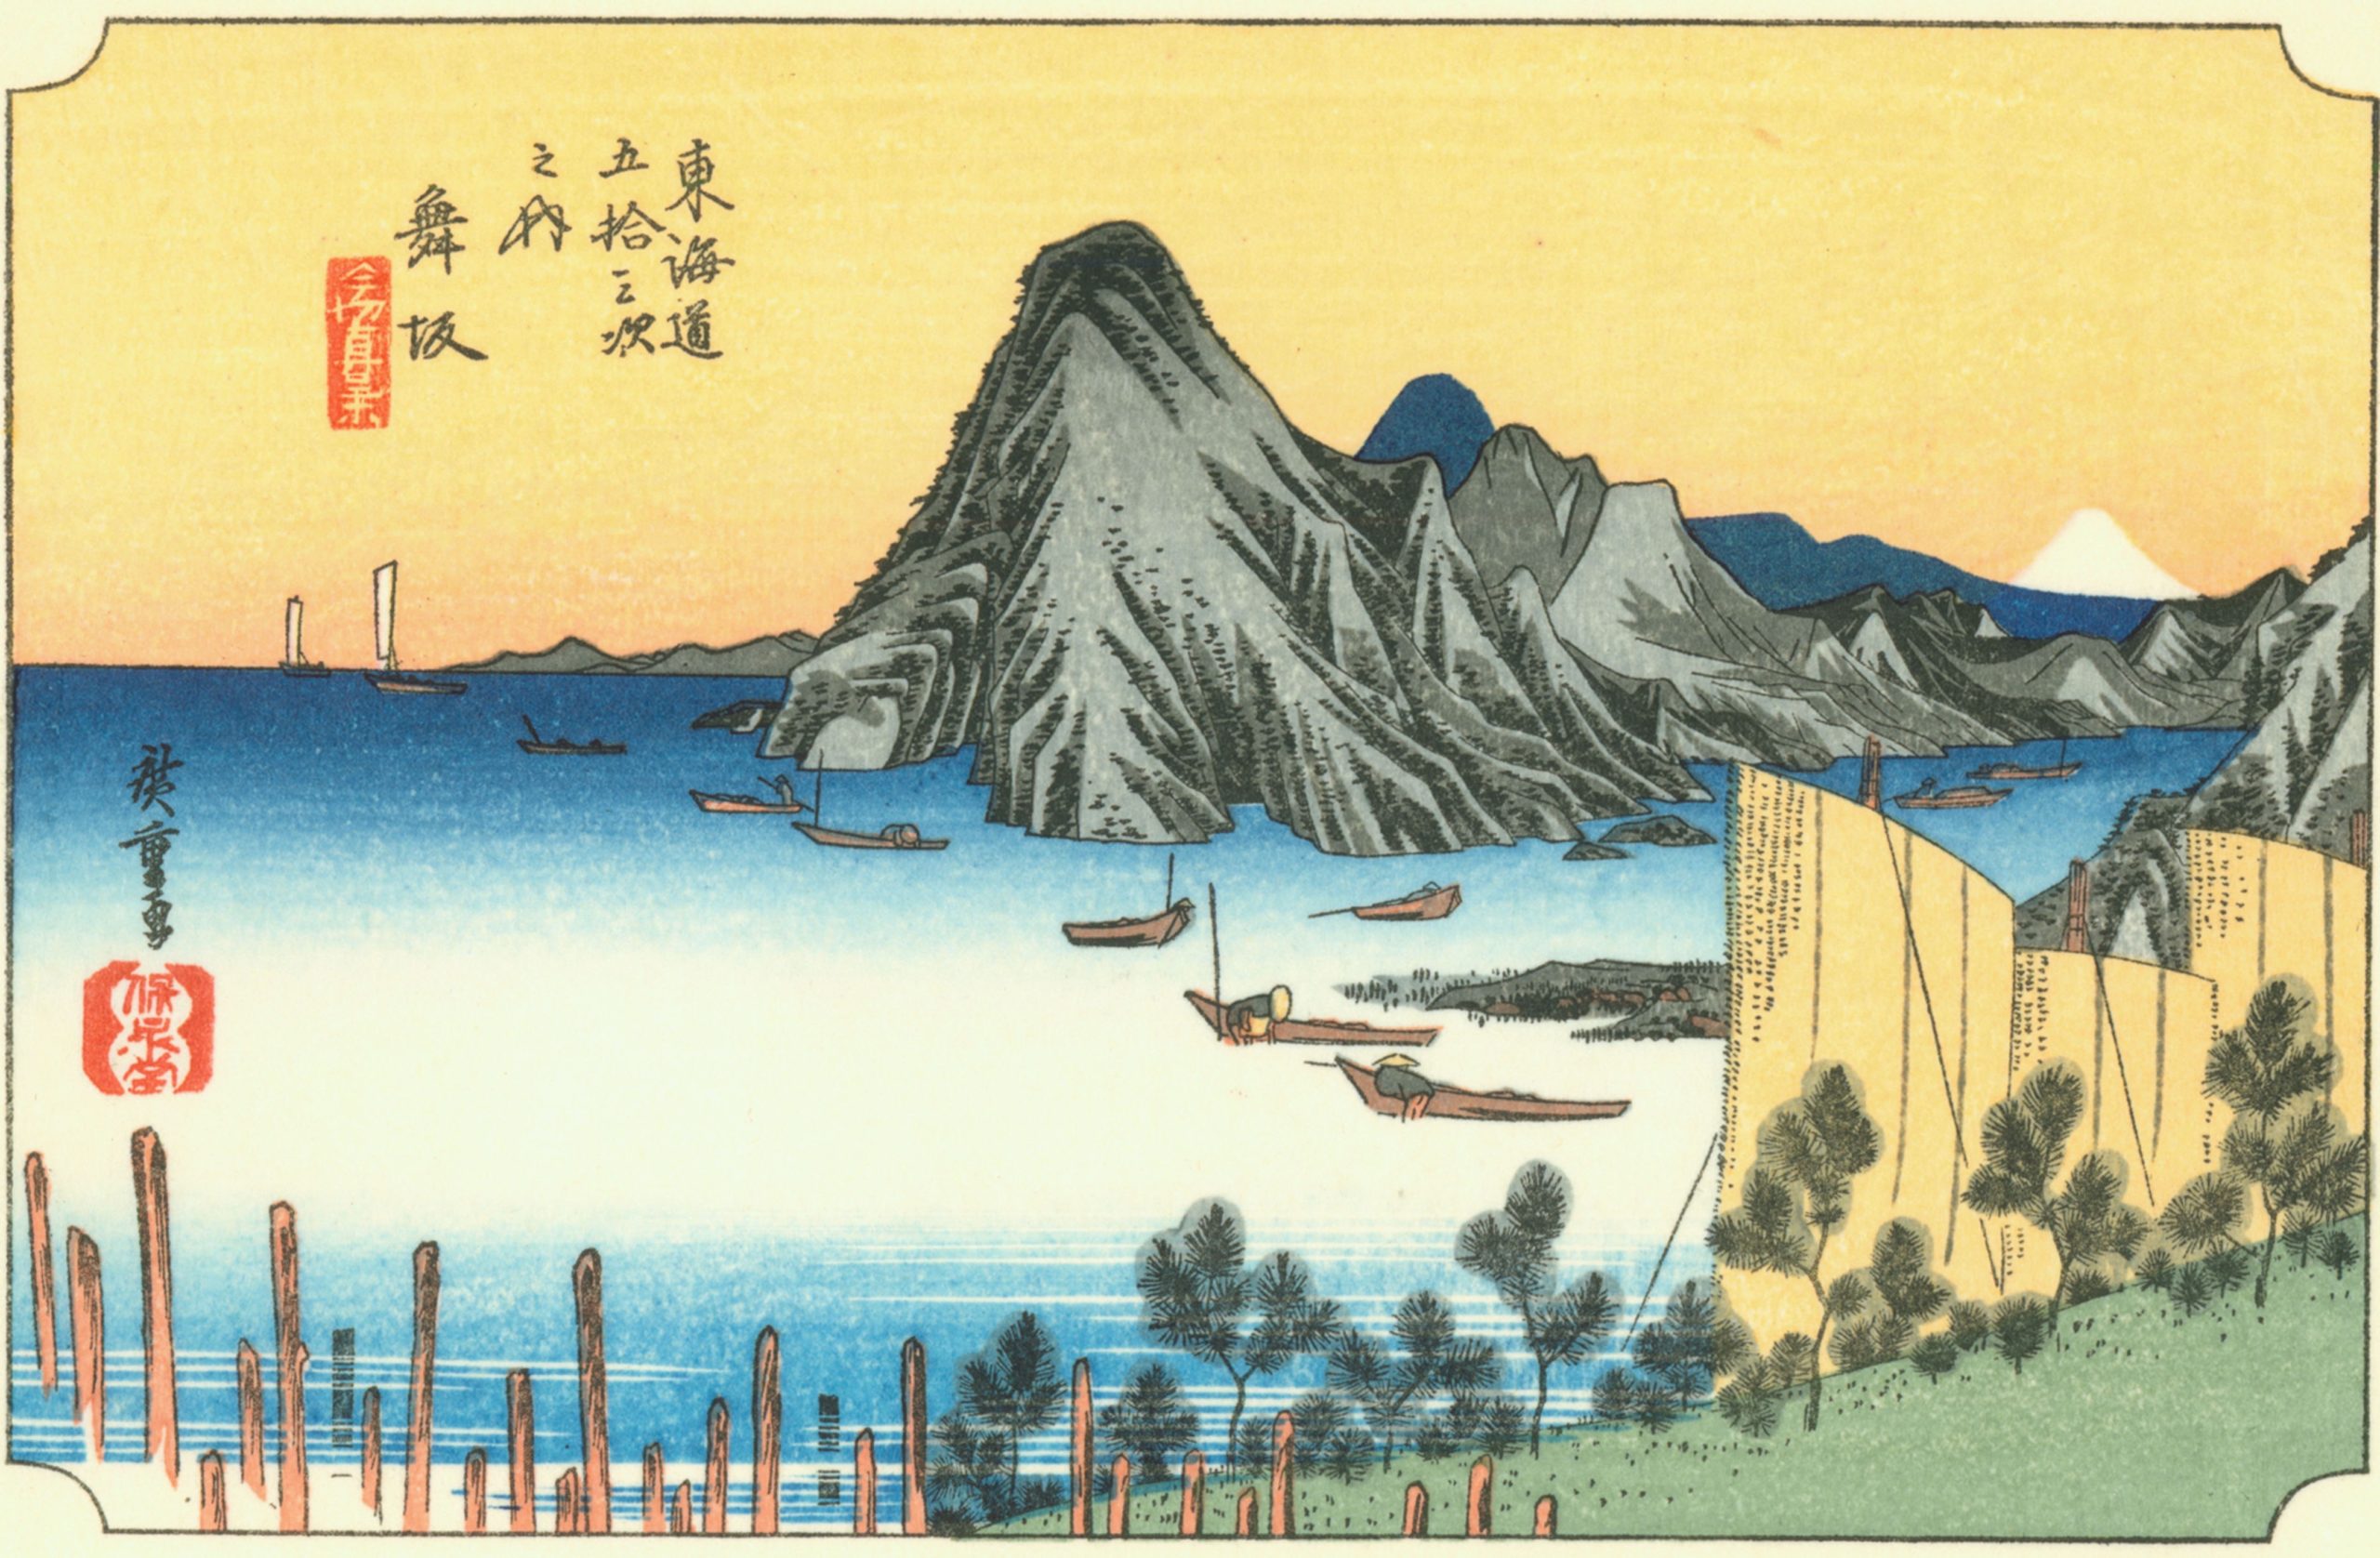 Hiroshige31 maisakashuku